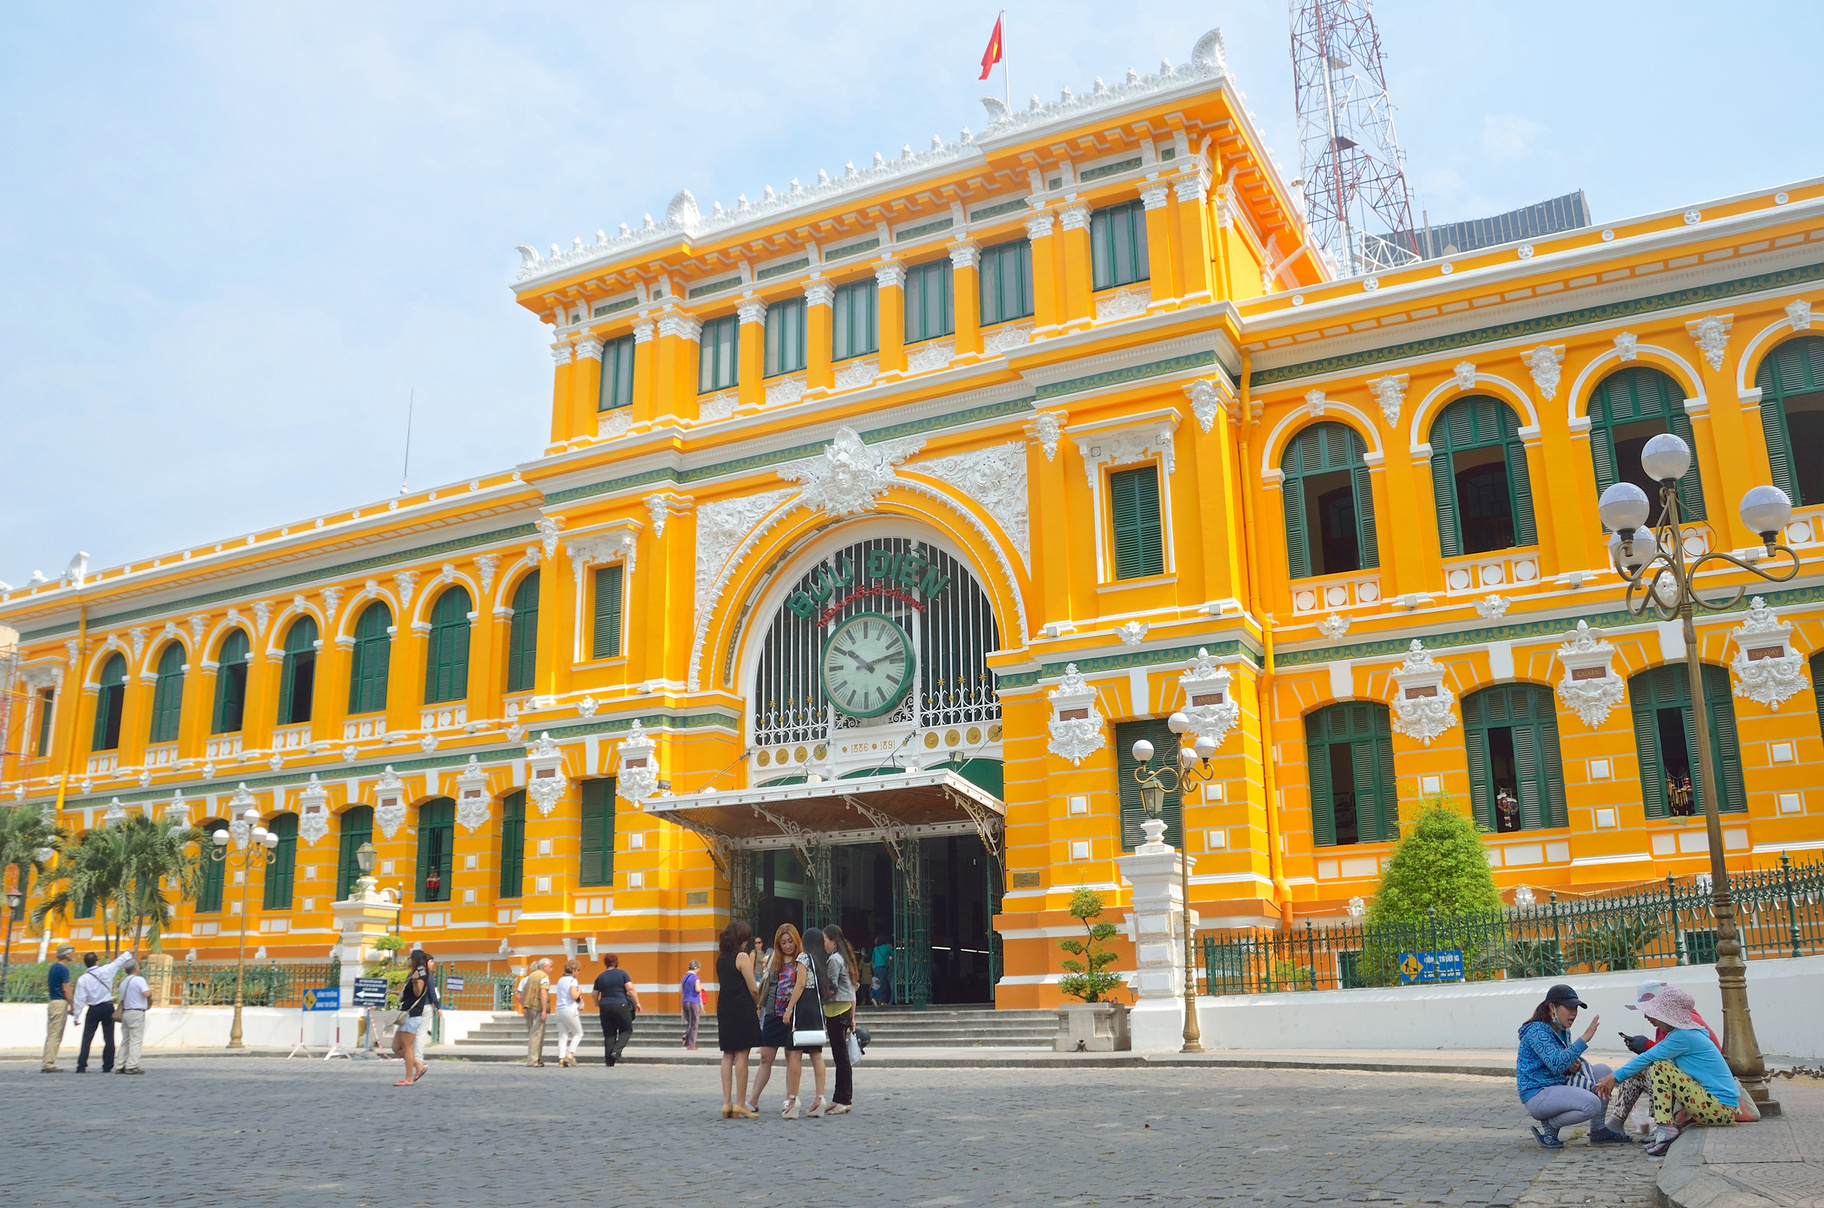 Bưu điện trung tâm Sài Gòn - Nét đẹp hài hòa giữa lòng thành phố Hồ Chí Minh